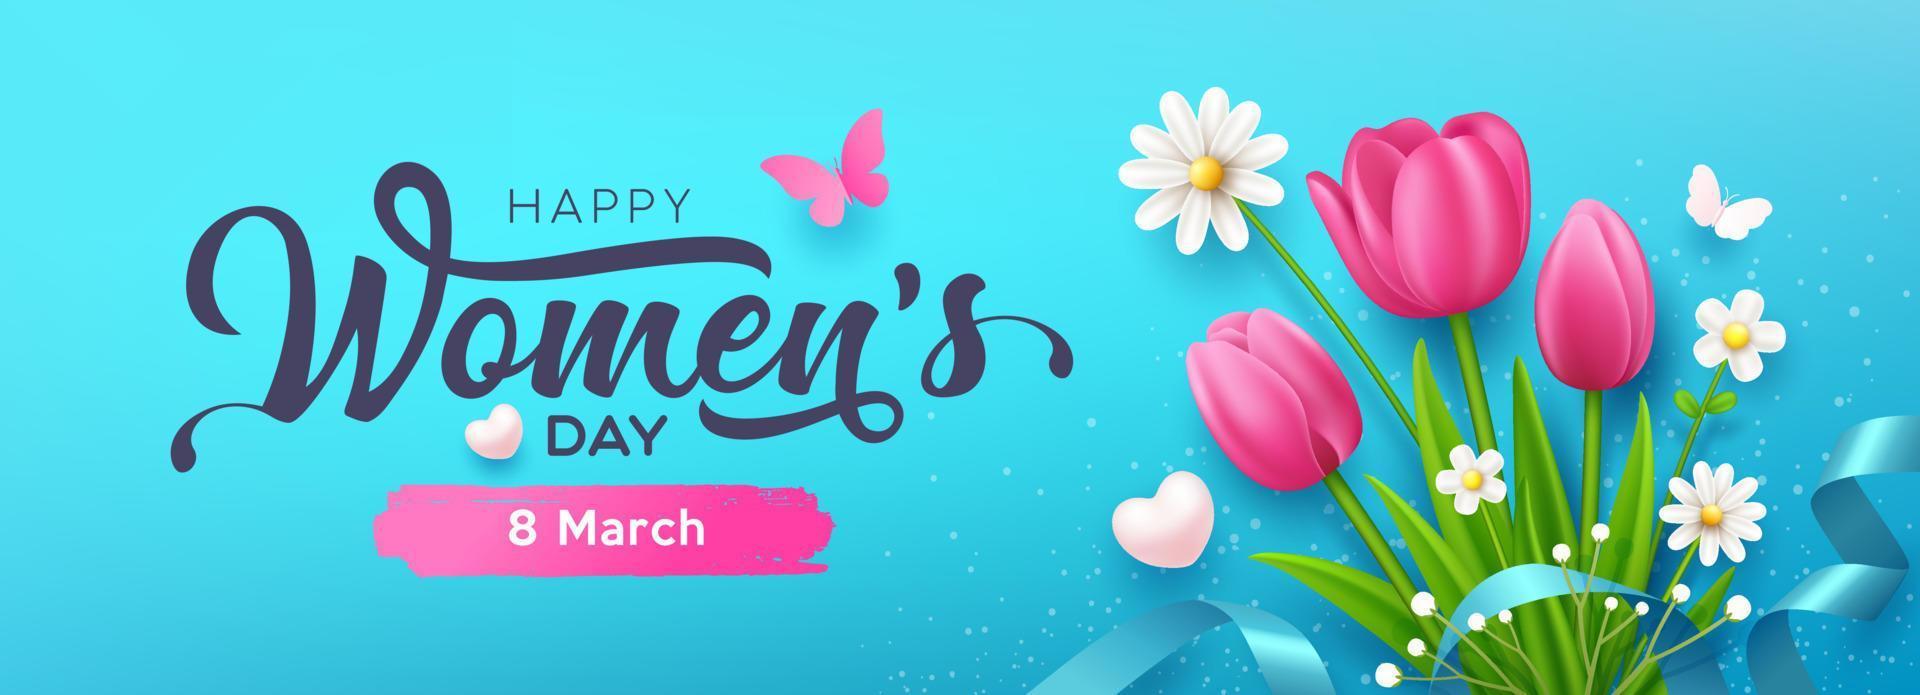 De las mujeres día mensaje, tulipán flores y mariposa con cintas bandera diseño en azul fondo, eps10 vector ilustración.